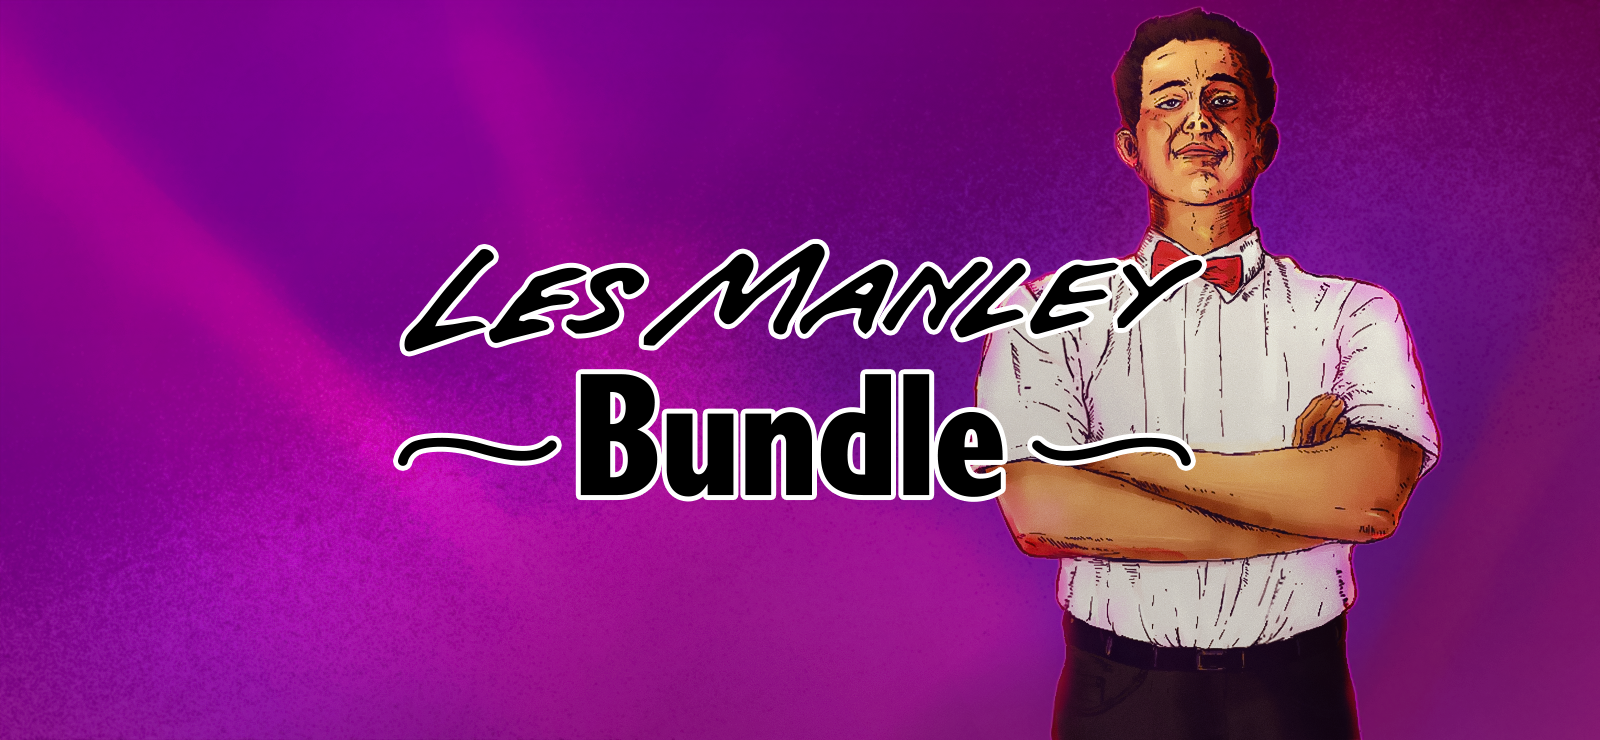 Les Manley Bundle